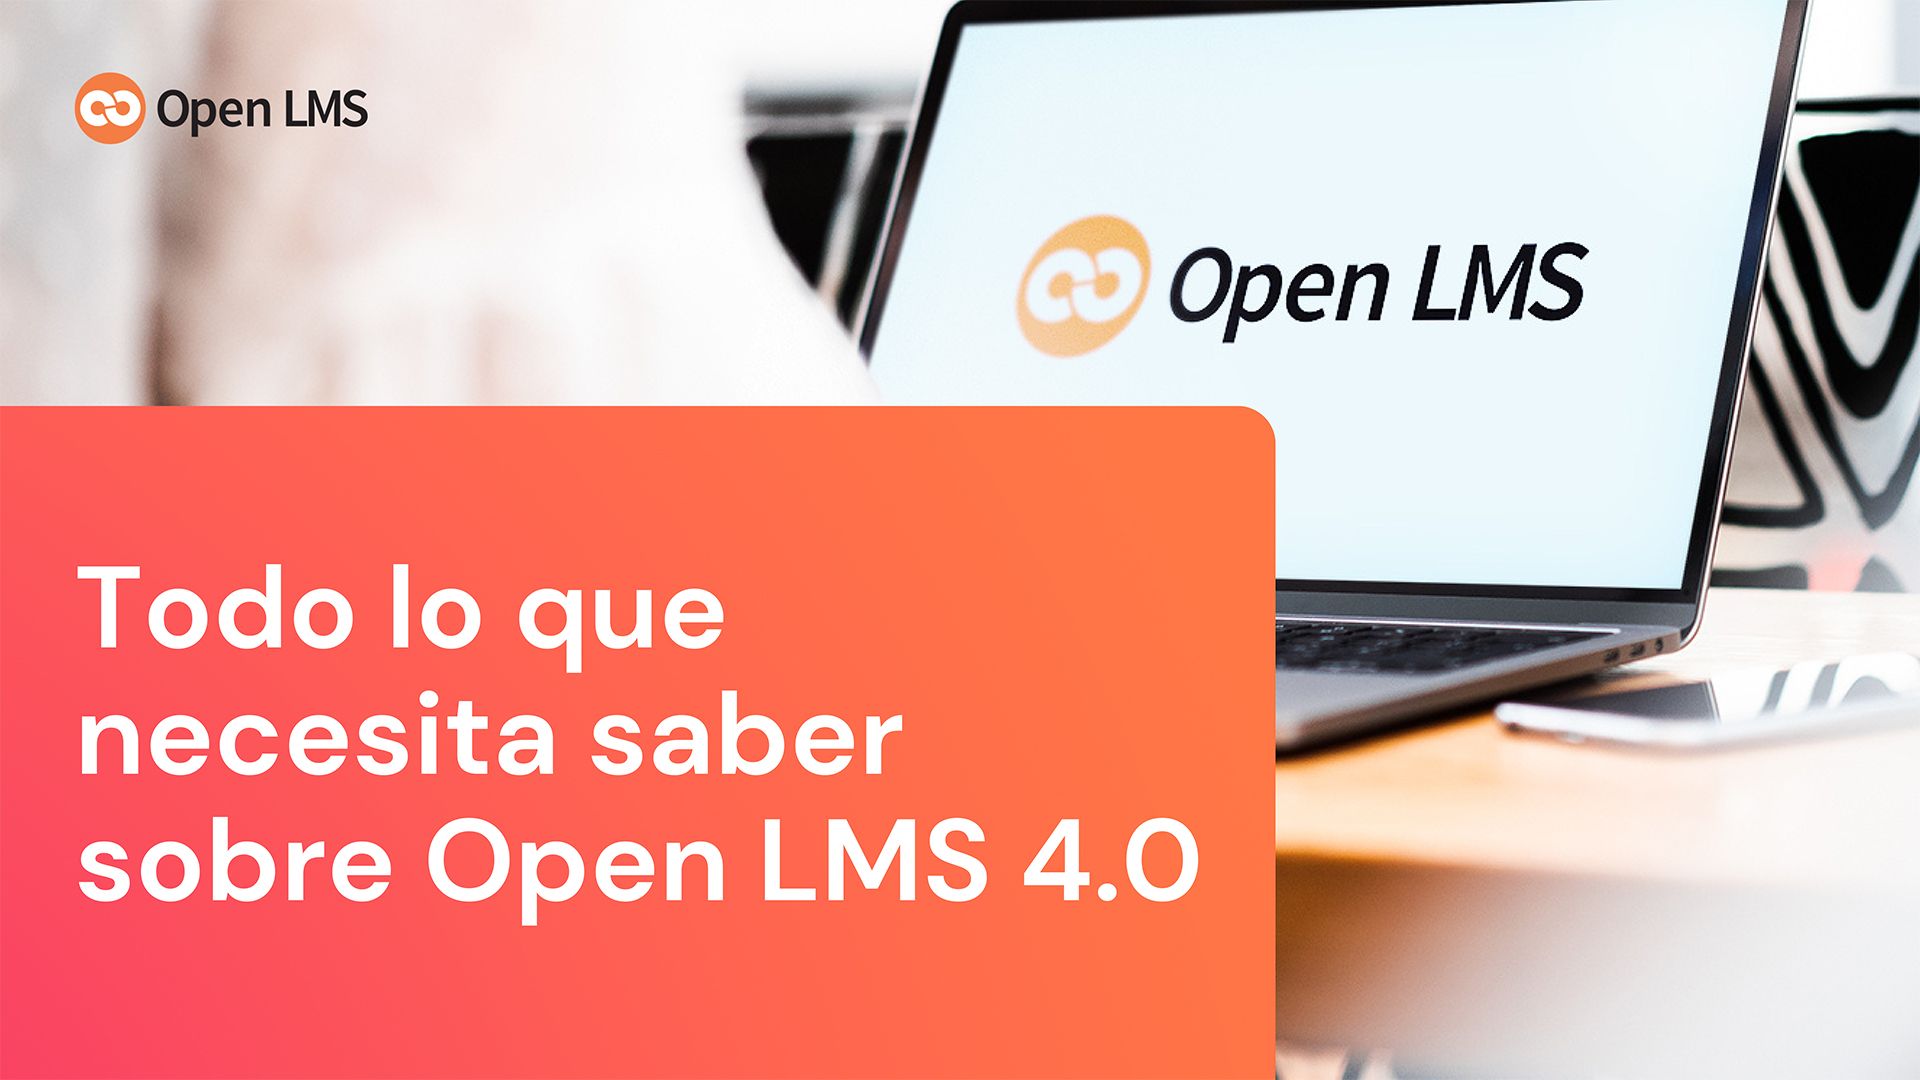 Todo lo que necesita saber sobre la actualización Open LMS 4.0